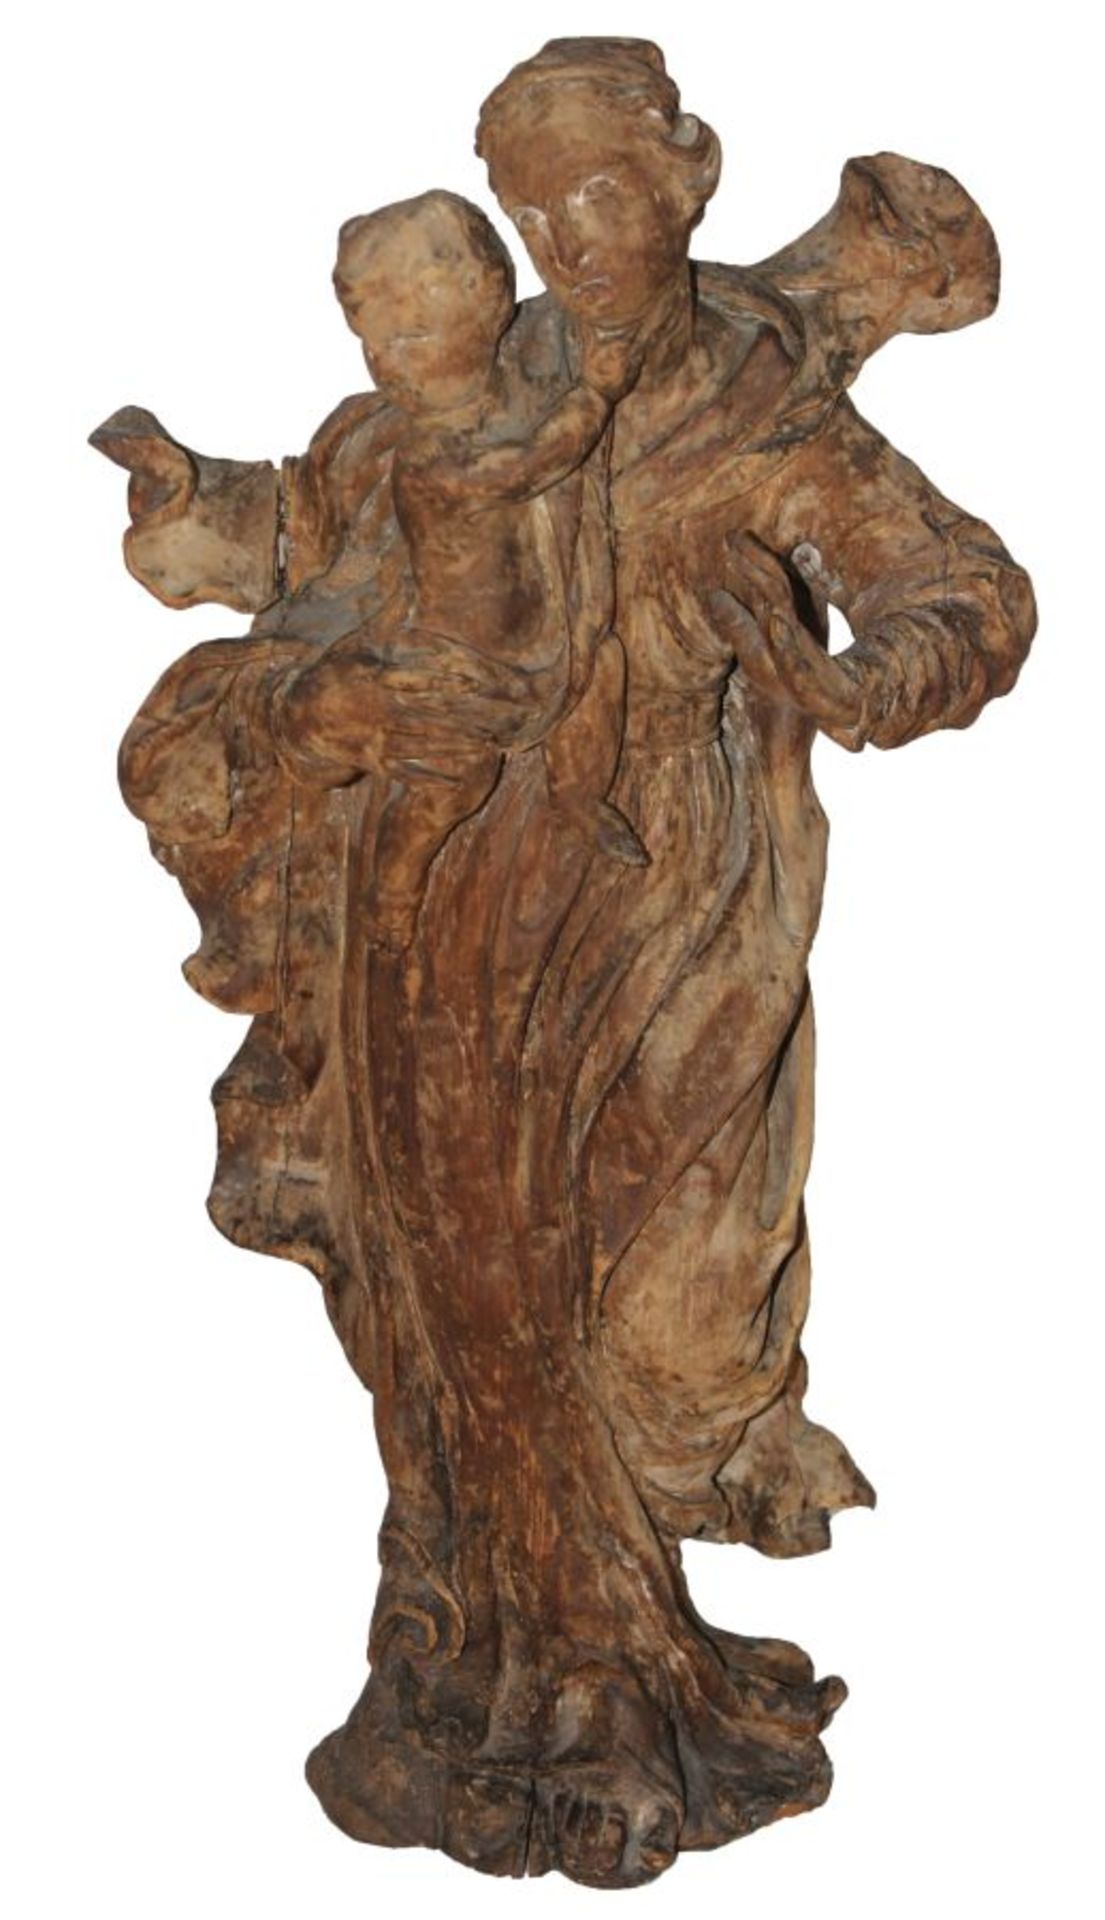 Skulptur - Barock 18.Jahrhundert "Madonna mit Kind", Holz geschnitzt, bewegte Manteldraperie über